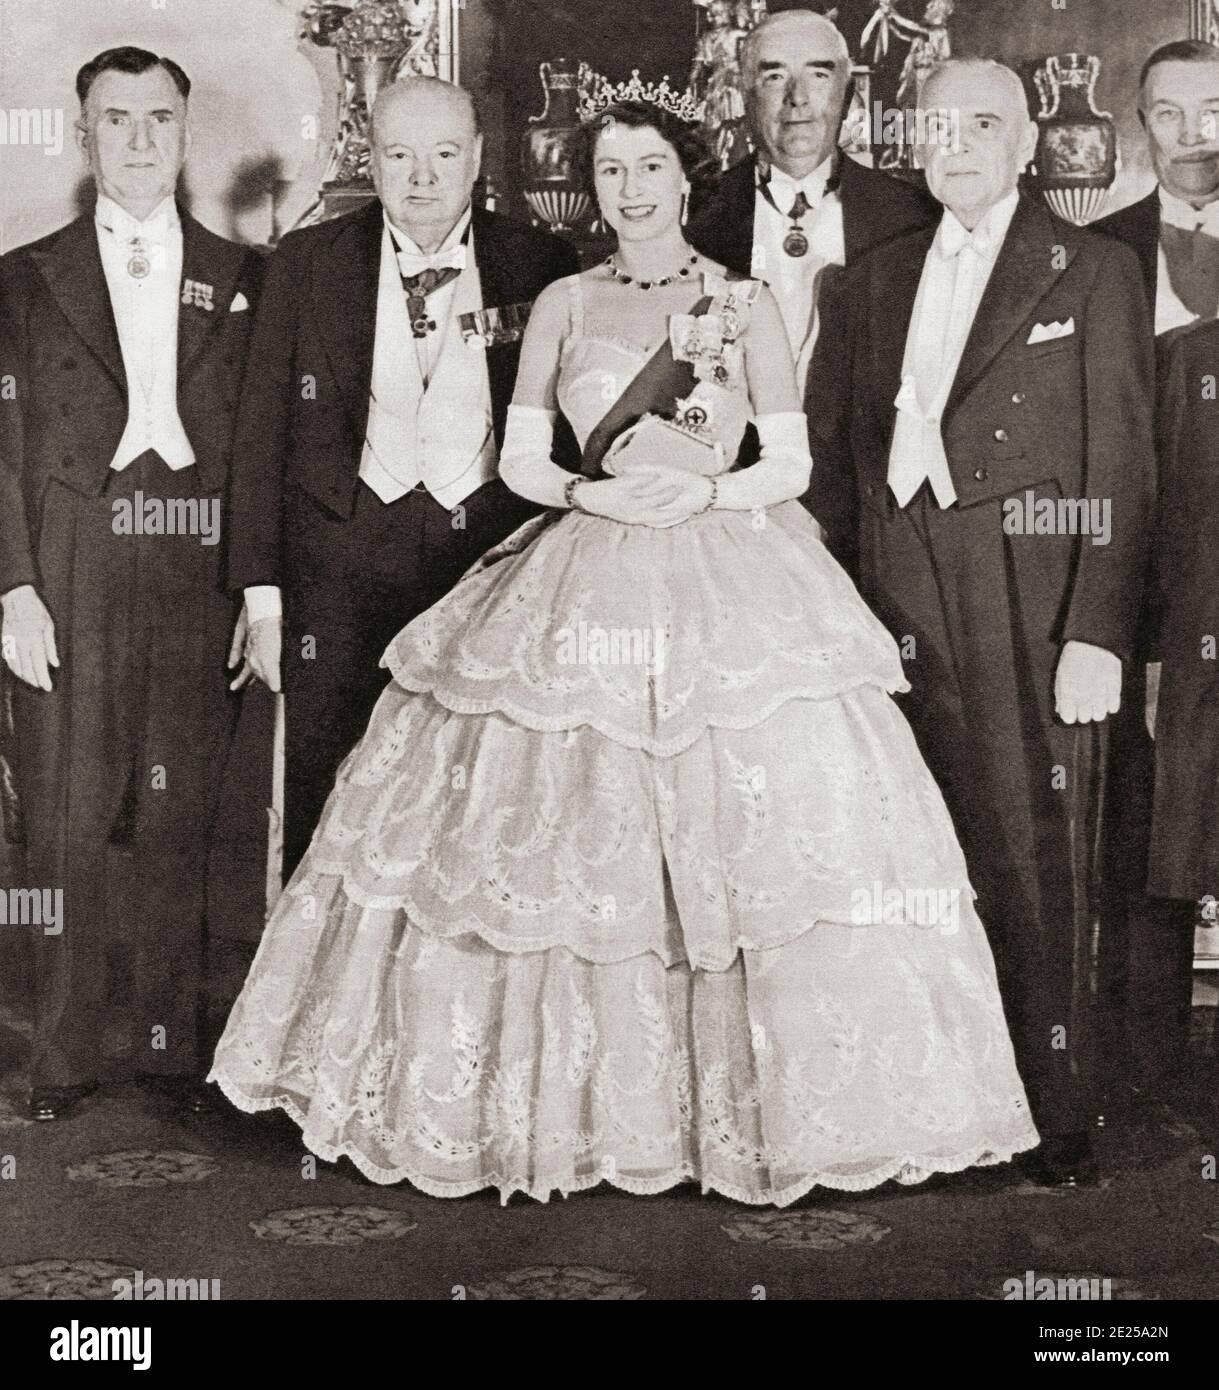 EDITORIAL NUR Queen Elizabeth II unterhält die Premierminister des Commonwealth im Buckingham Palace im Jahr 1952. Von links nach rechts, Mr. S.G. Holland (Neuseeland), Winston Chuchill (Großbritannien), Robert Menzies (Australien) und St. Laurent (Kanada). Aus dem Königin-Elisabeth-Krönungsbuch, veröffentlicht 1953. Stockfoto